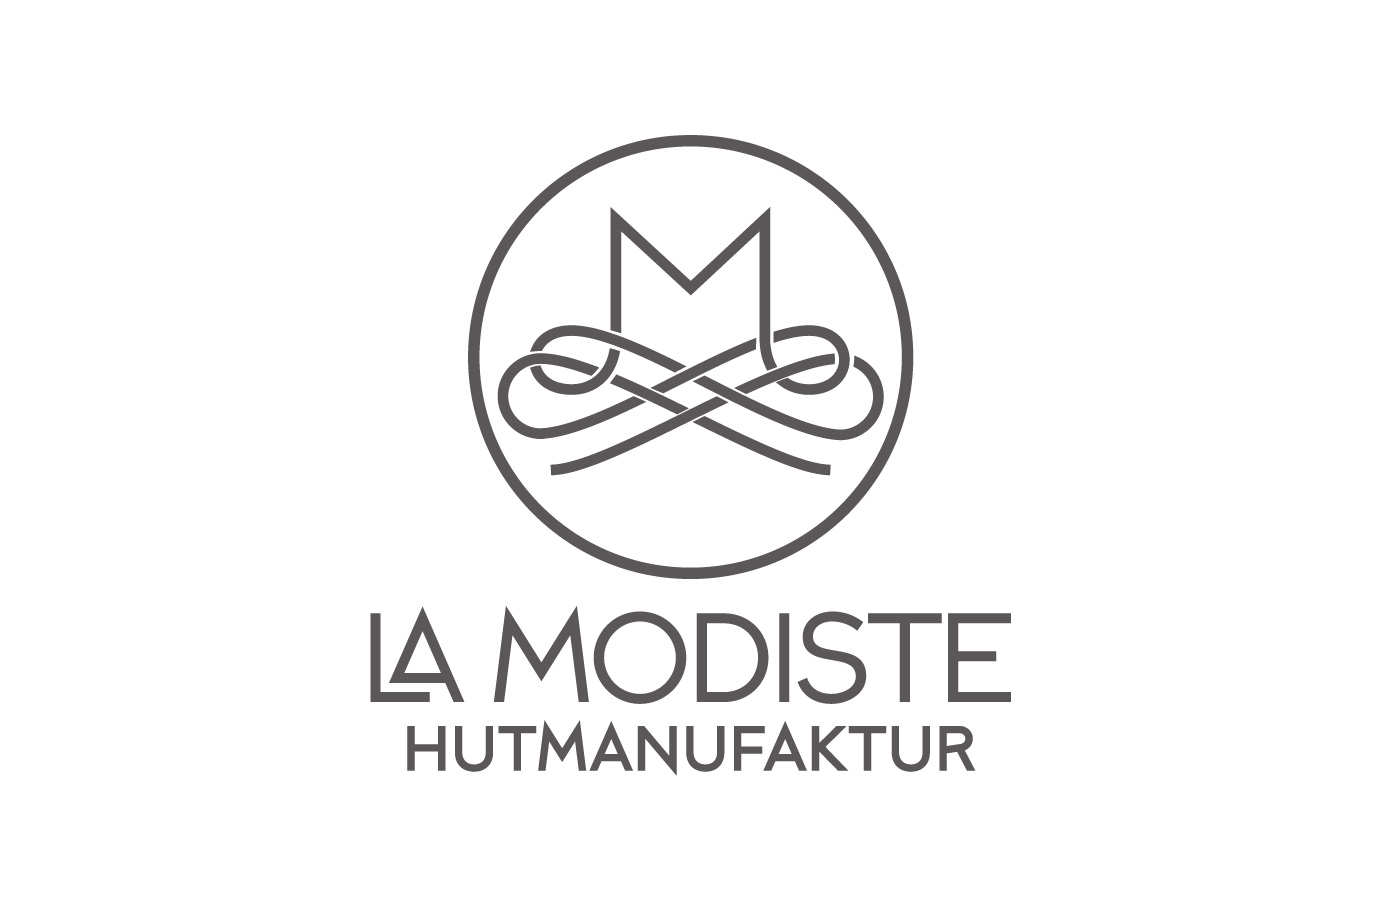 Logoentwicklung Hutmanufaktur